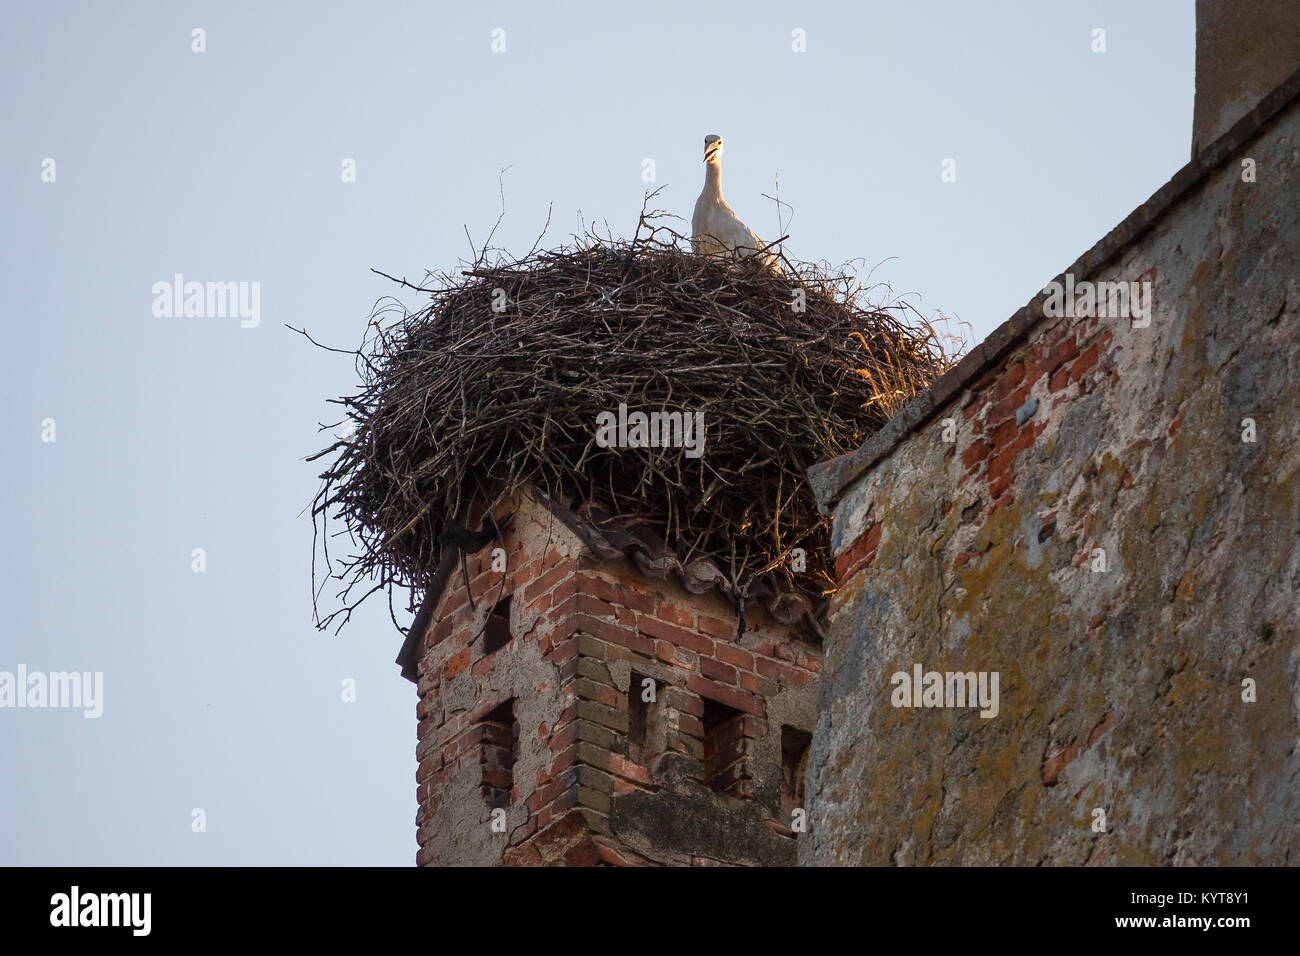 Stork nest on chimney Stock Photo